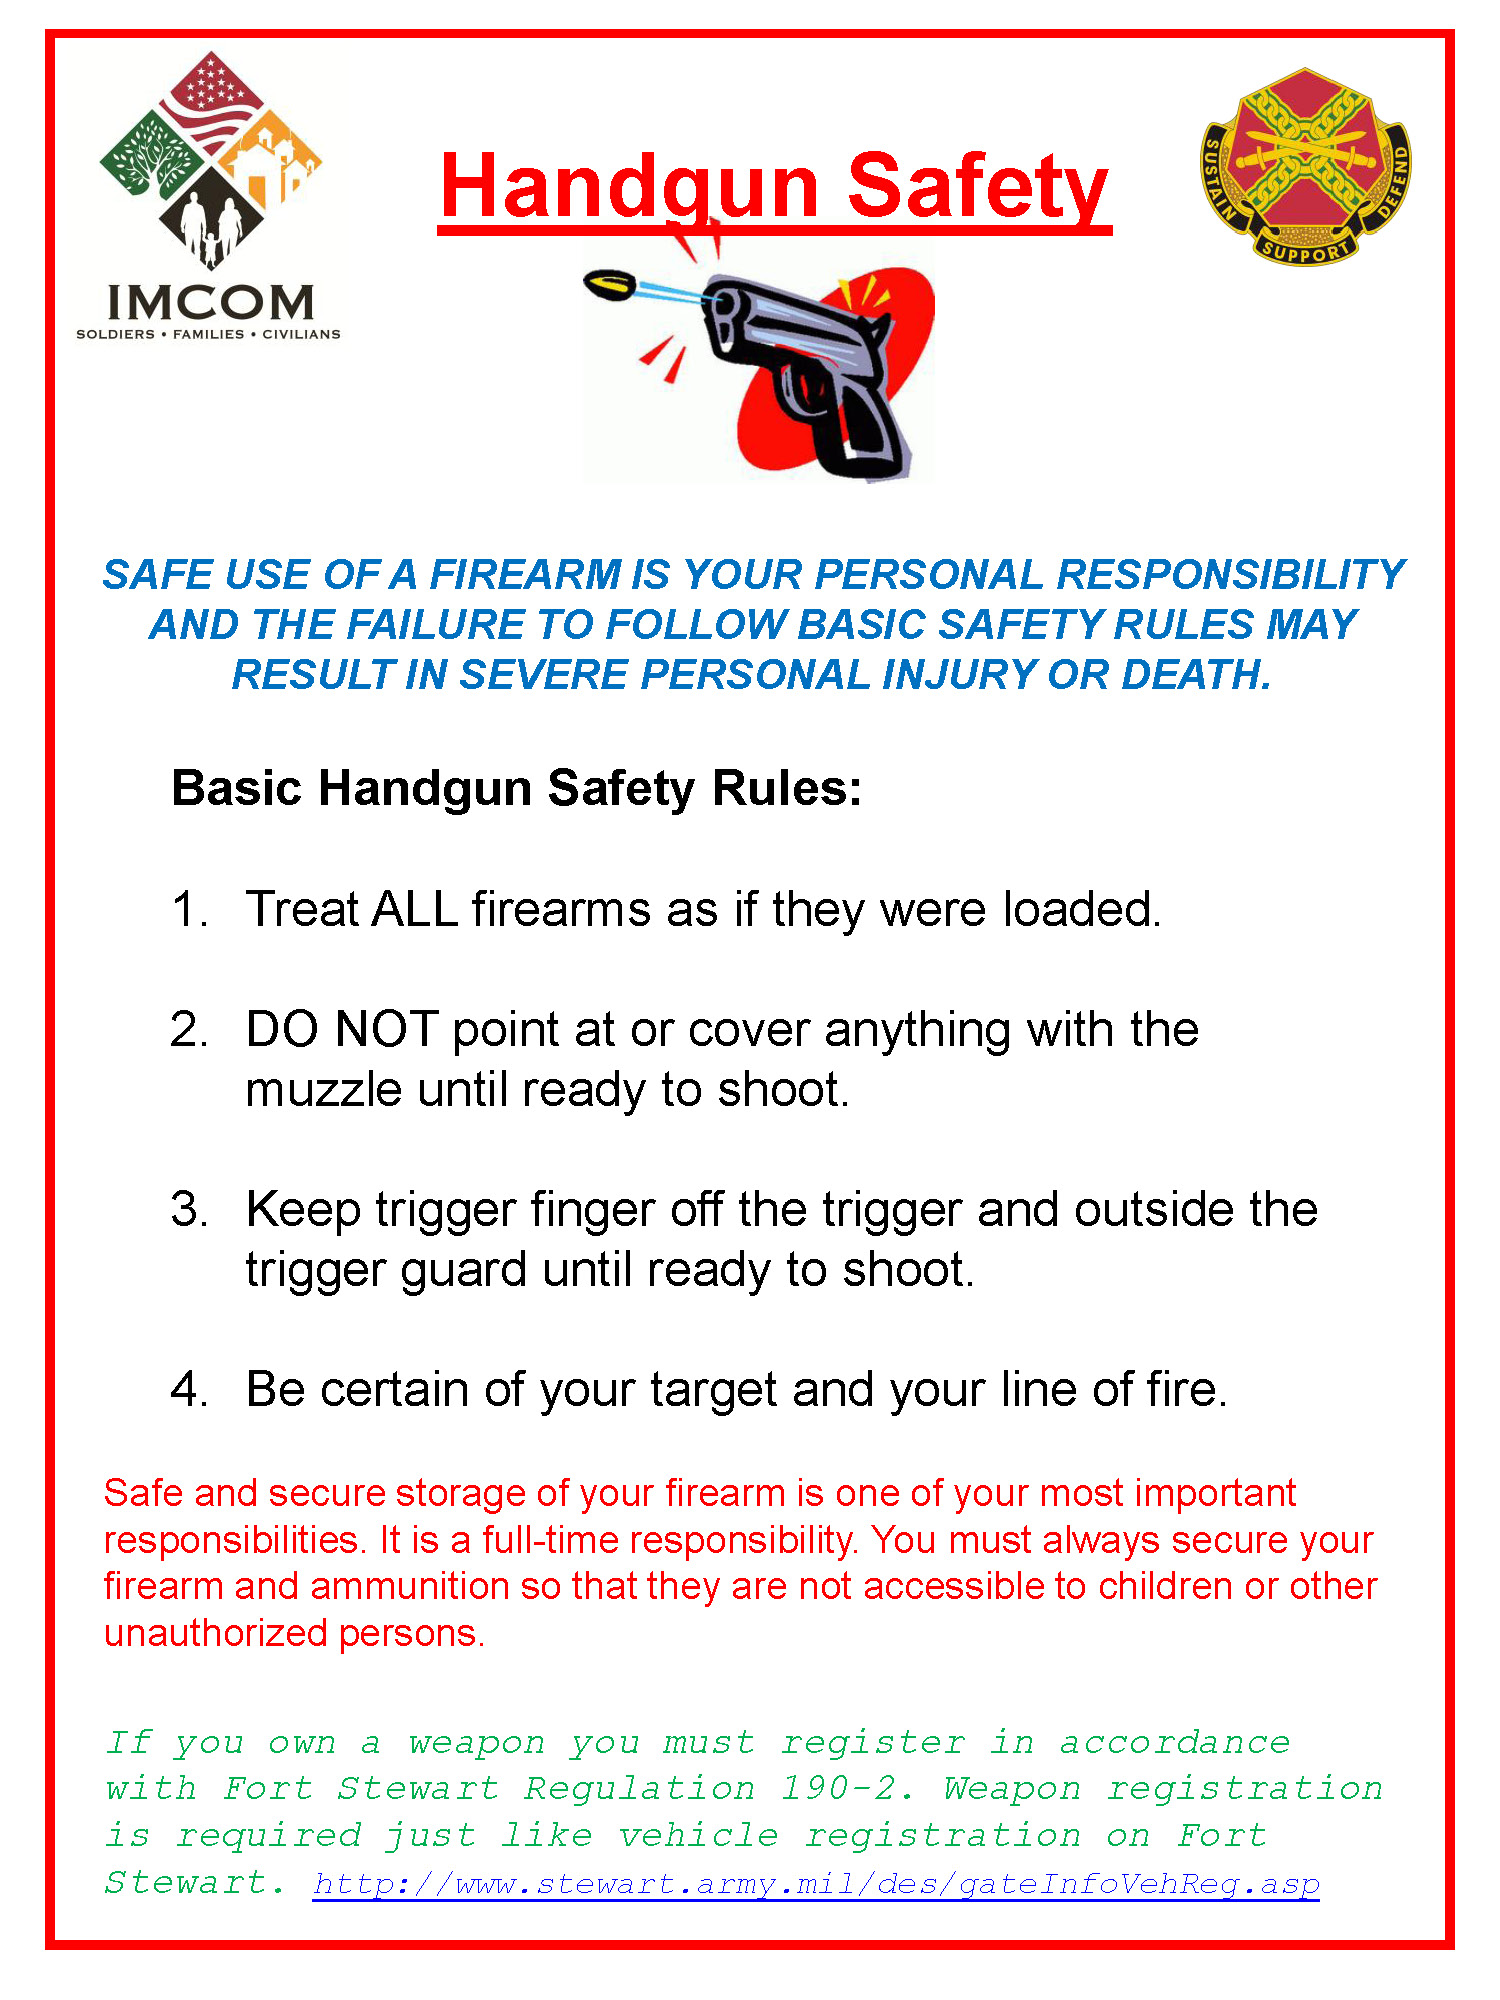 Handgun Safety 2012